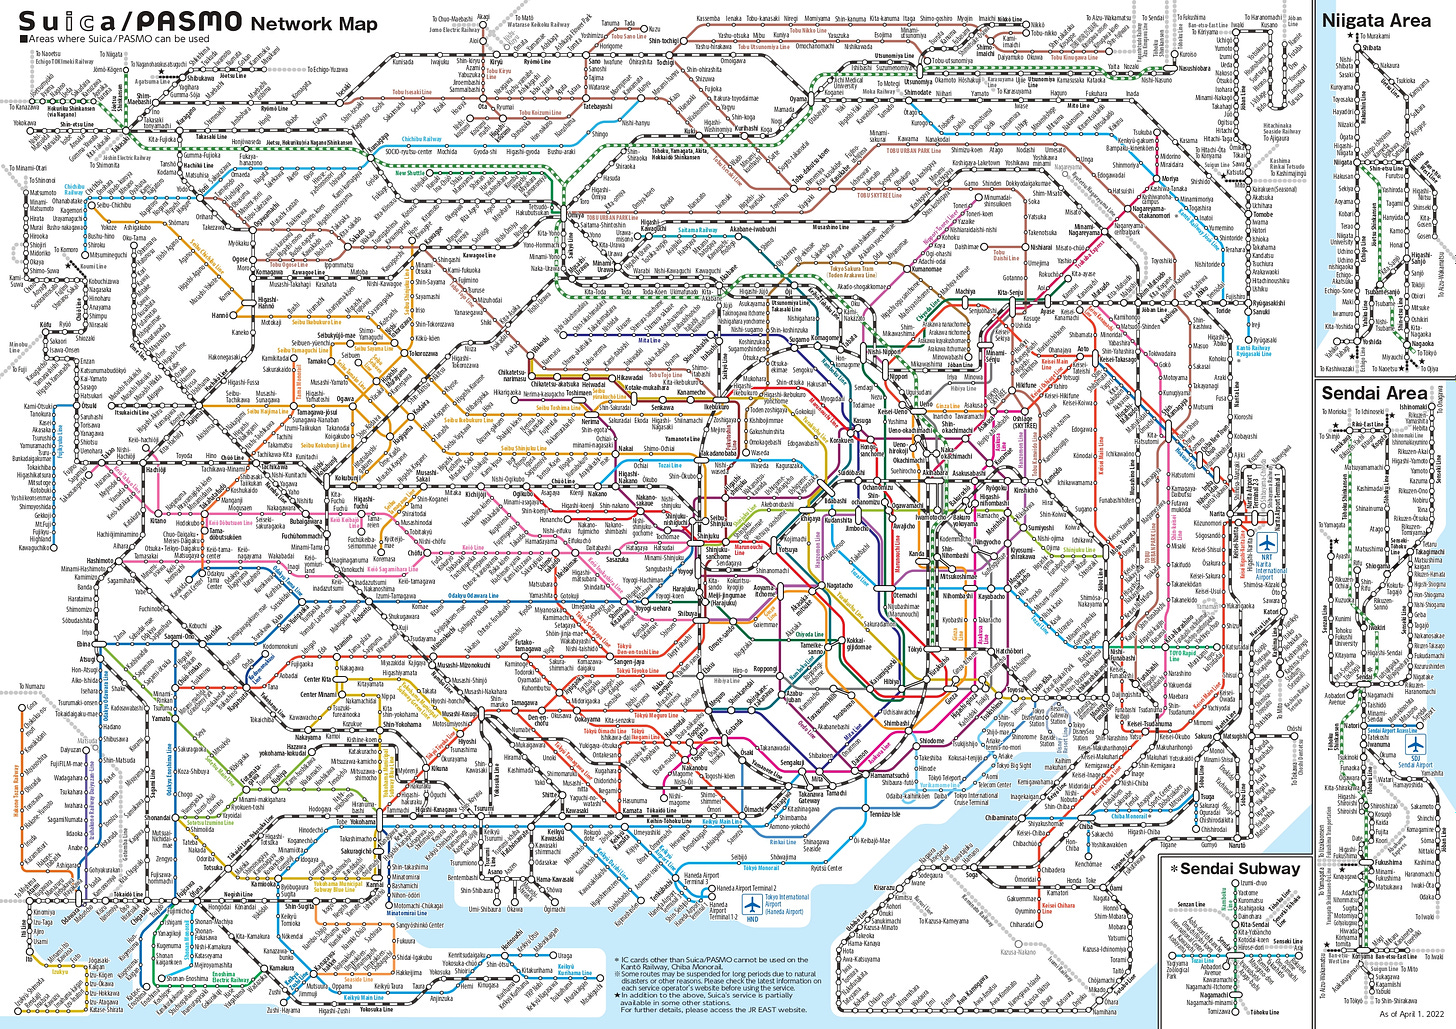 https://photos.smugmug.com/Transit-Maps/Japan/i-KNVpKMH/0/c5348fa8/O/tokyo-suica-pasmo-network.jpg